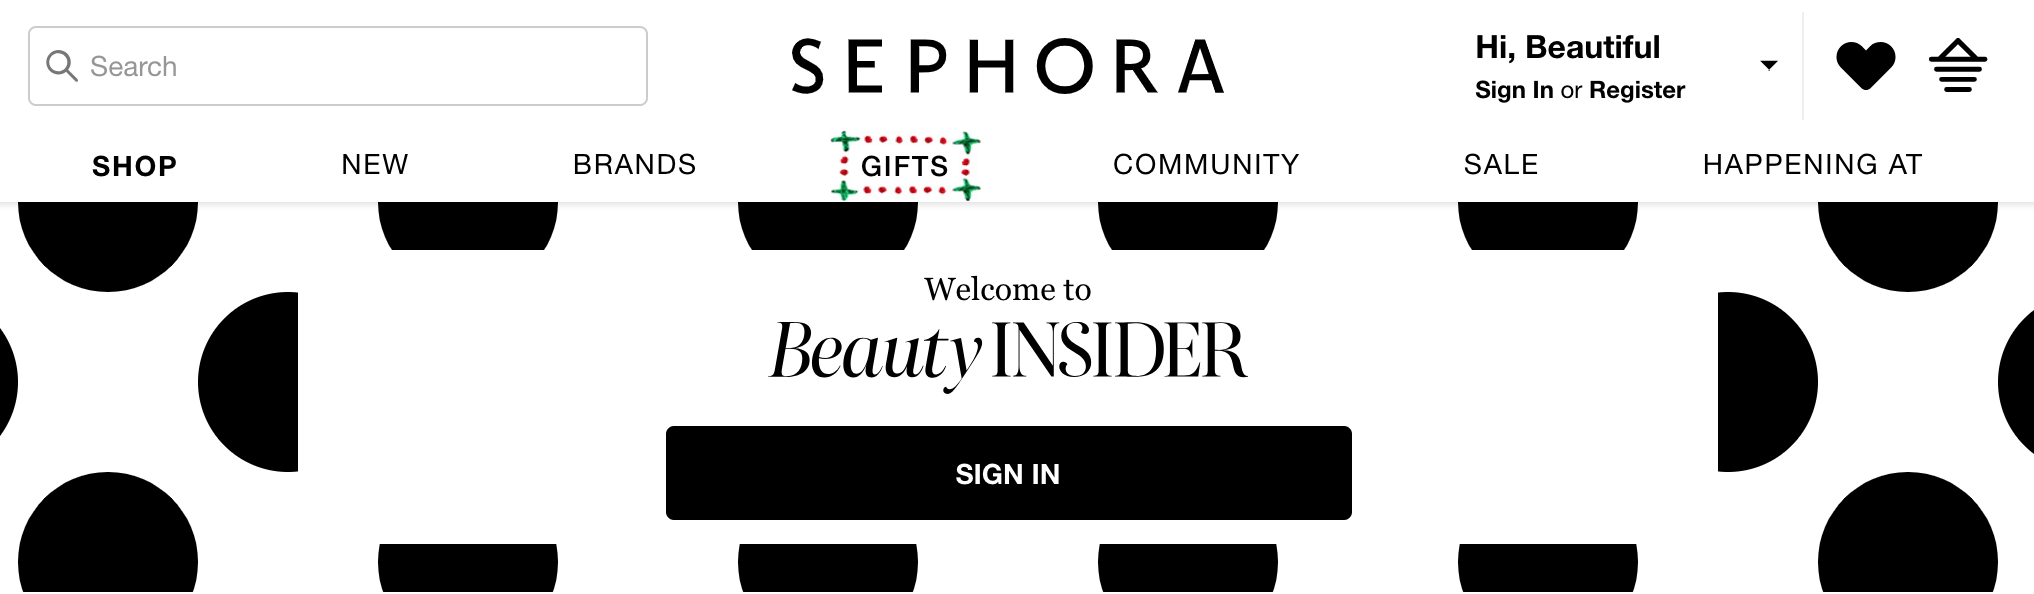 sephora-beauty-insider-banner